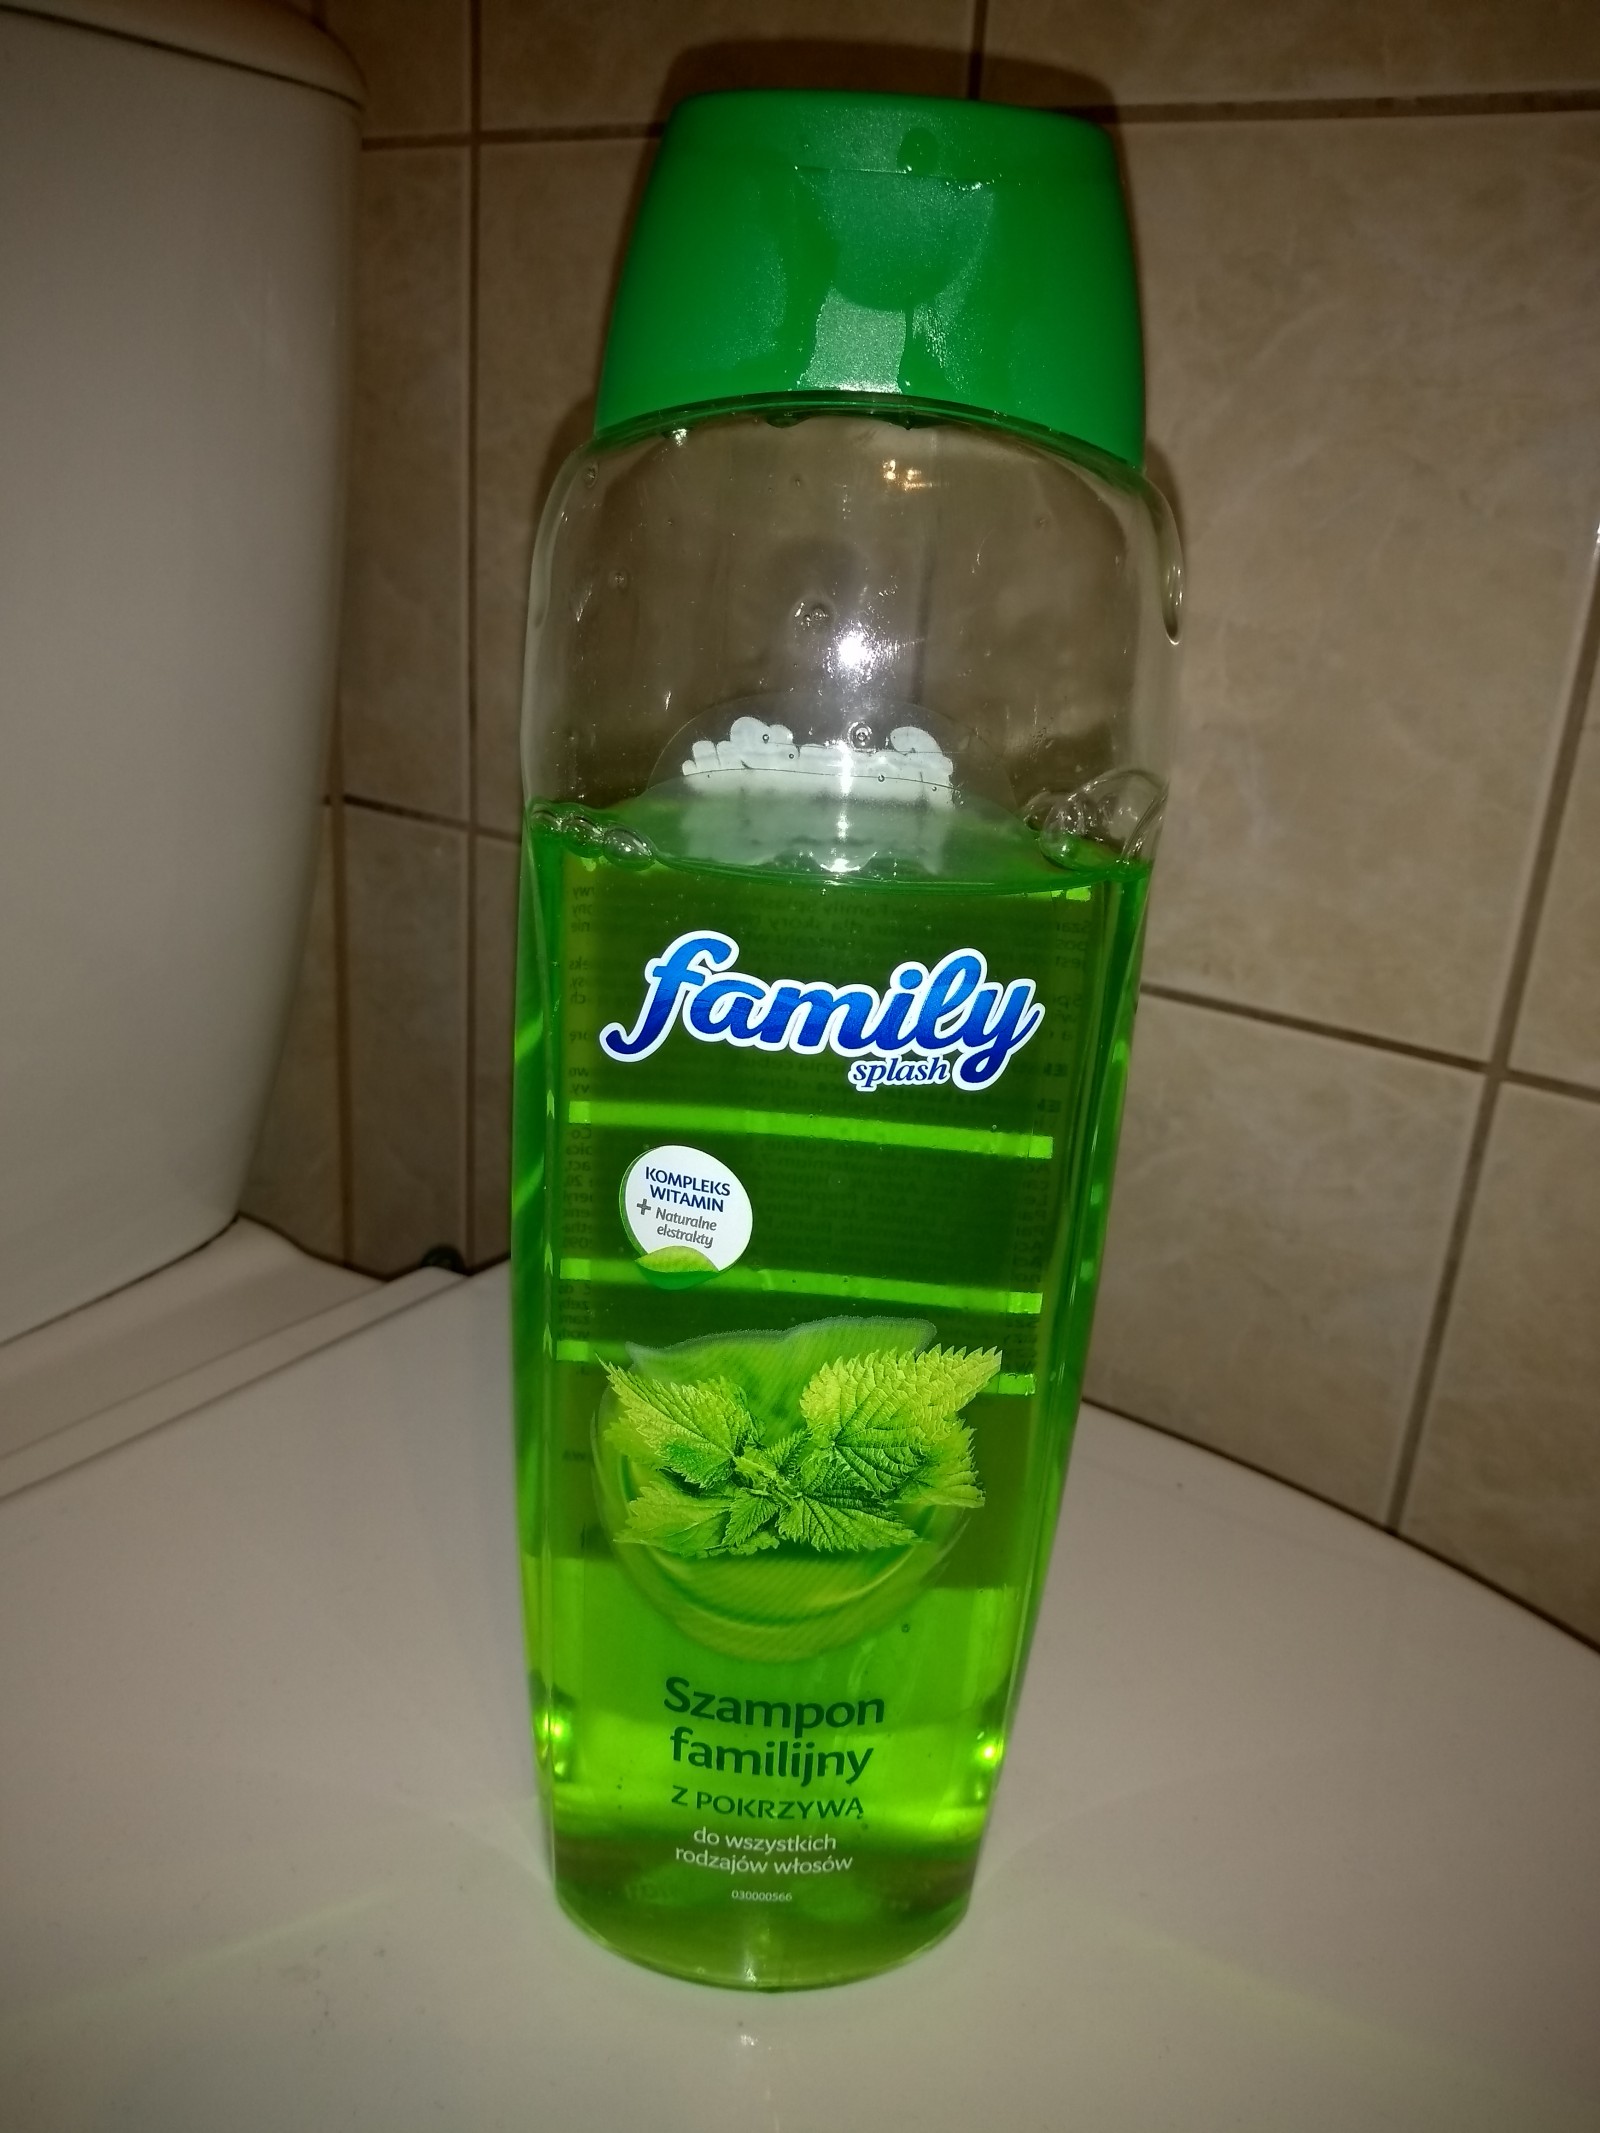 szampon family splash